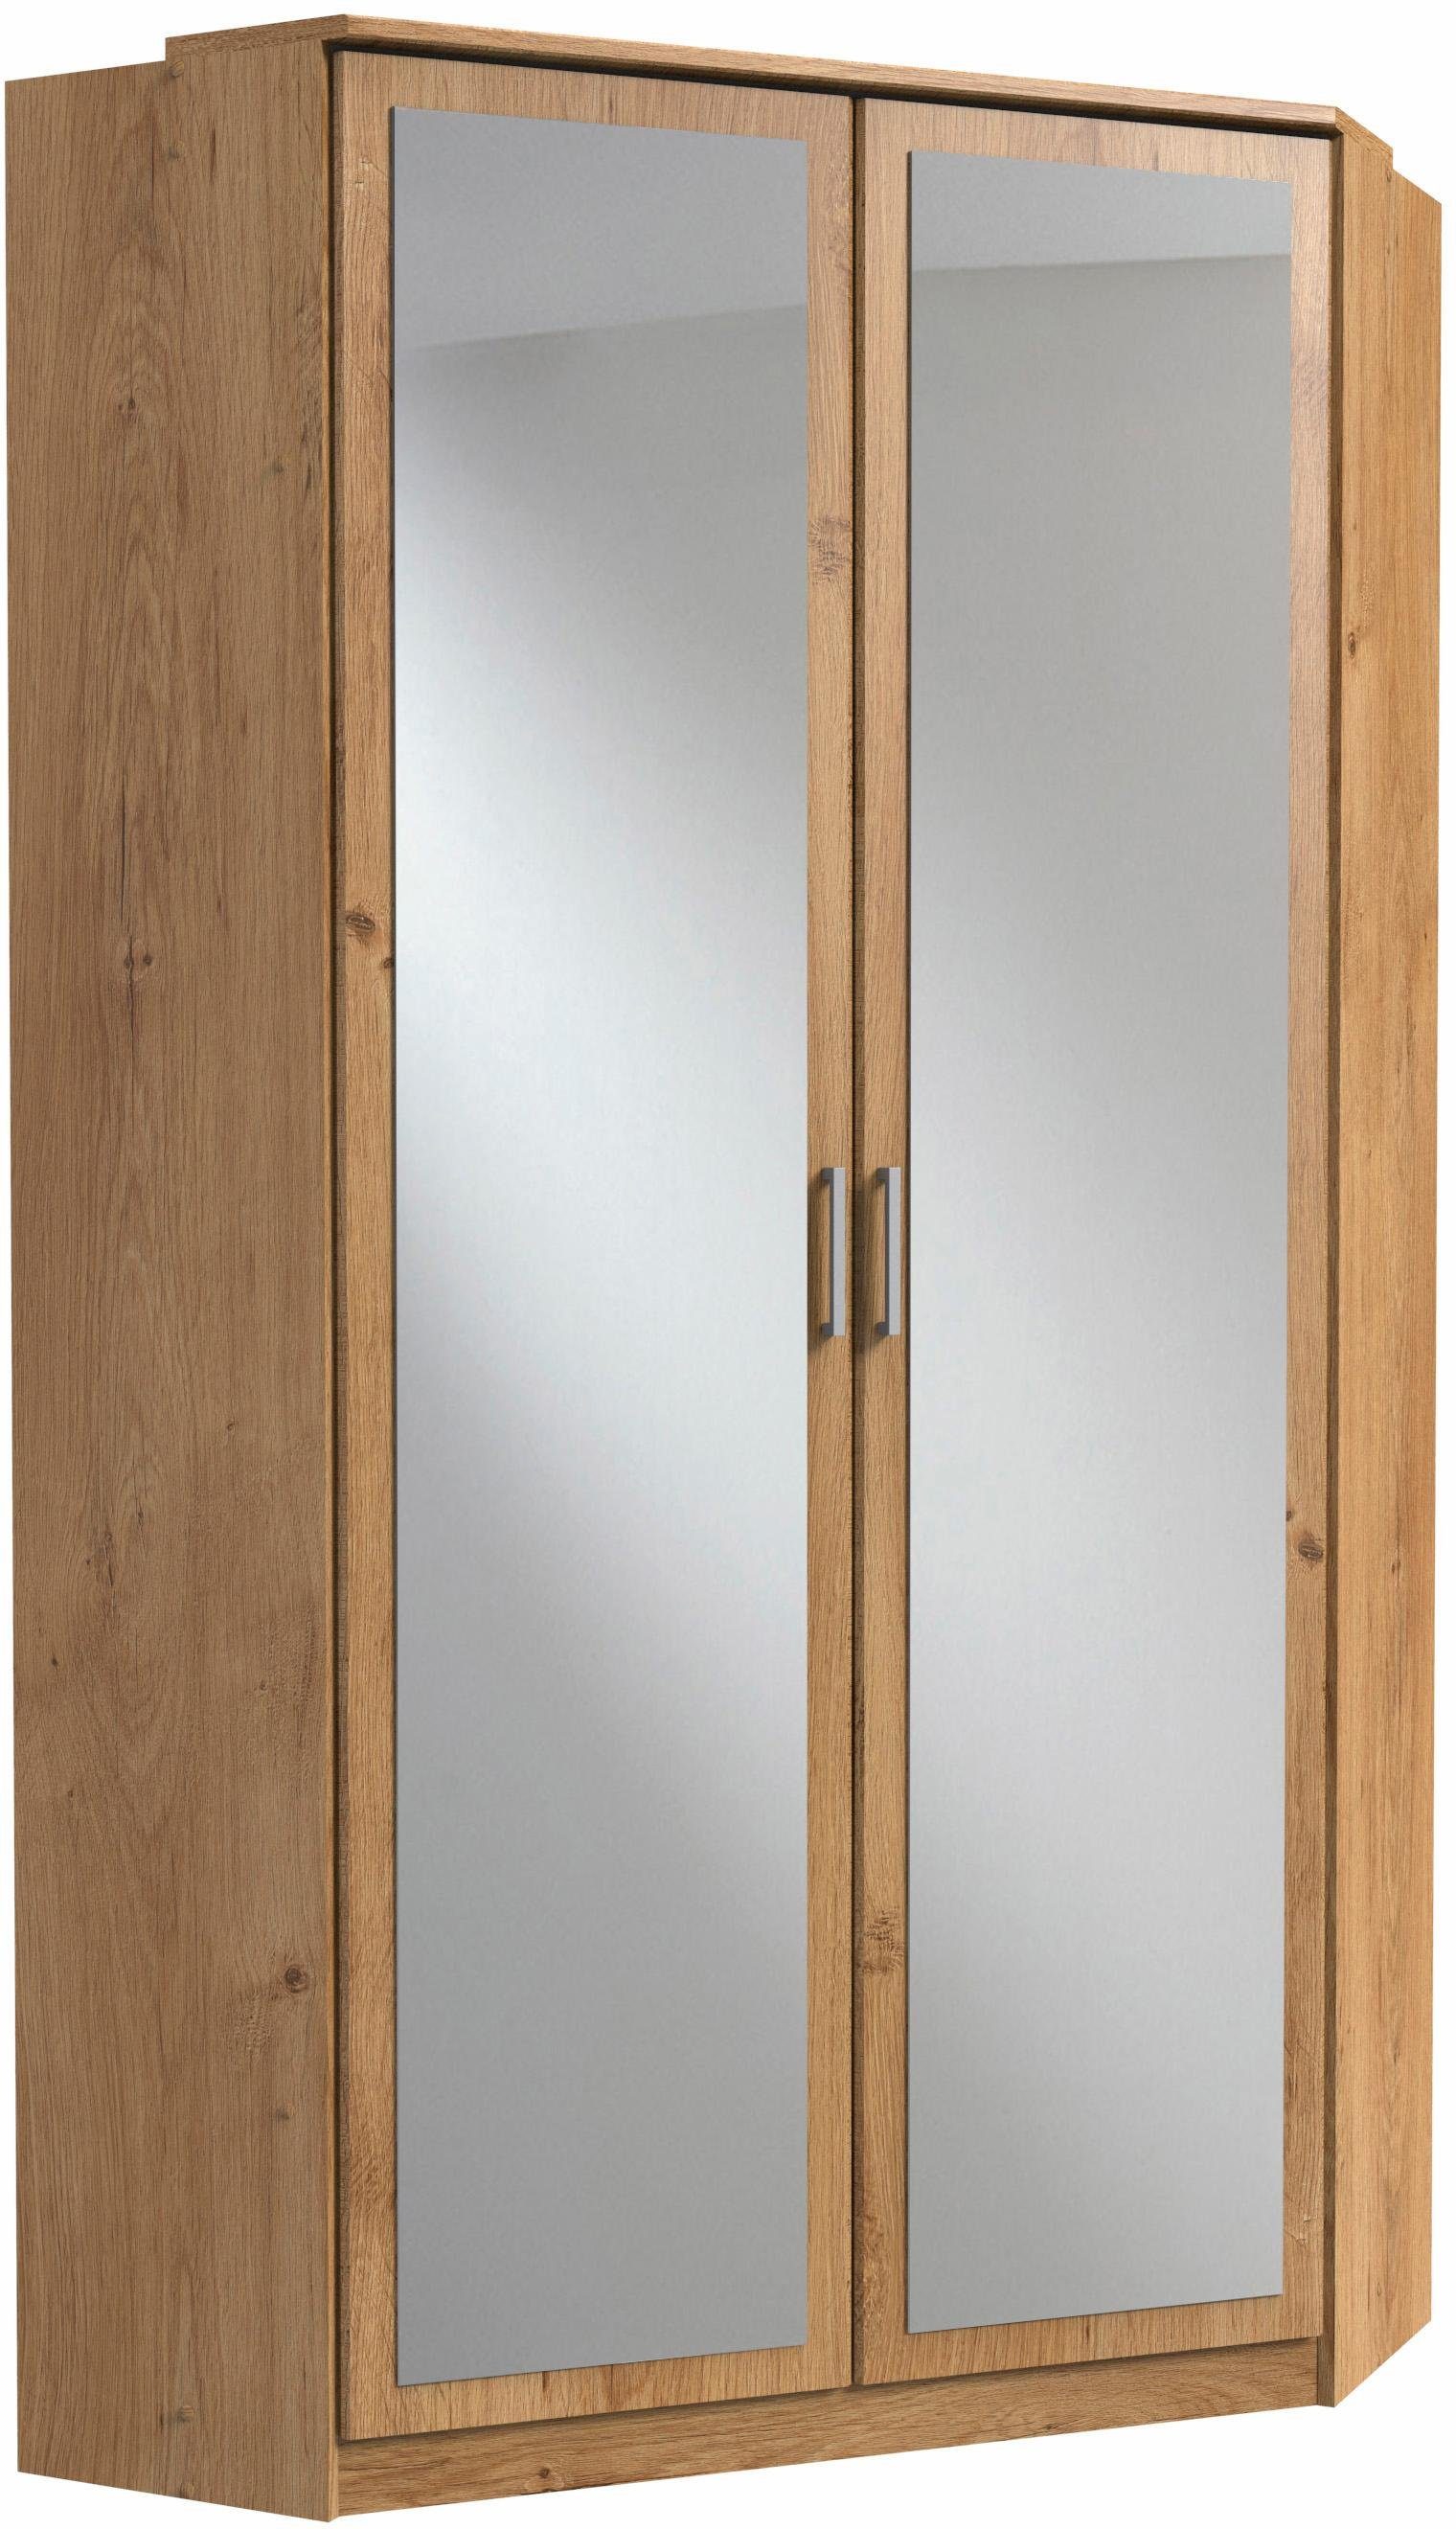 wimex hoekkledingkast click met 2 spiegeldeuren beige